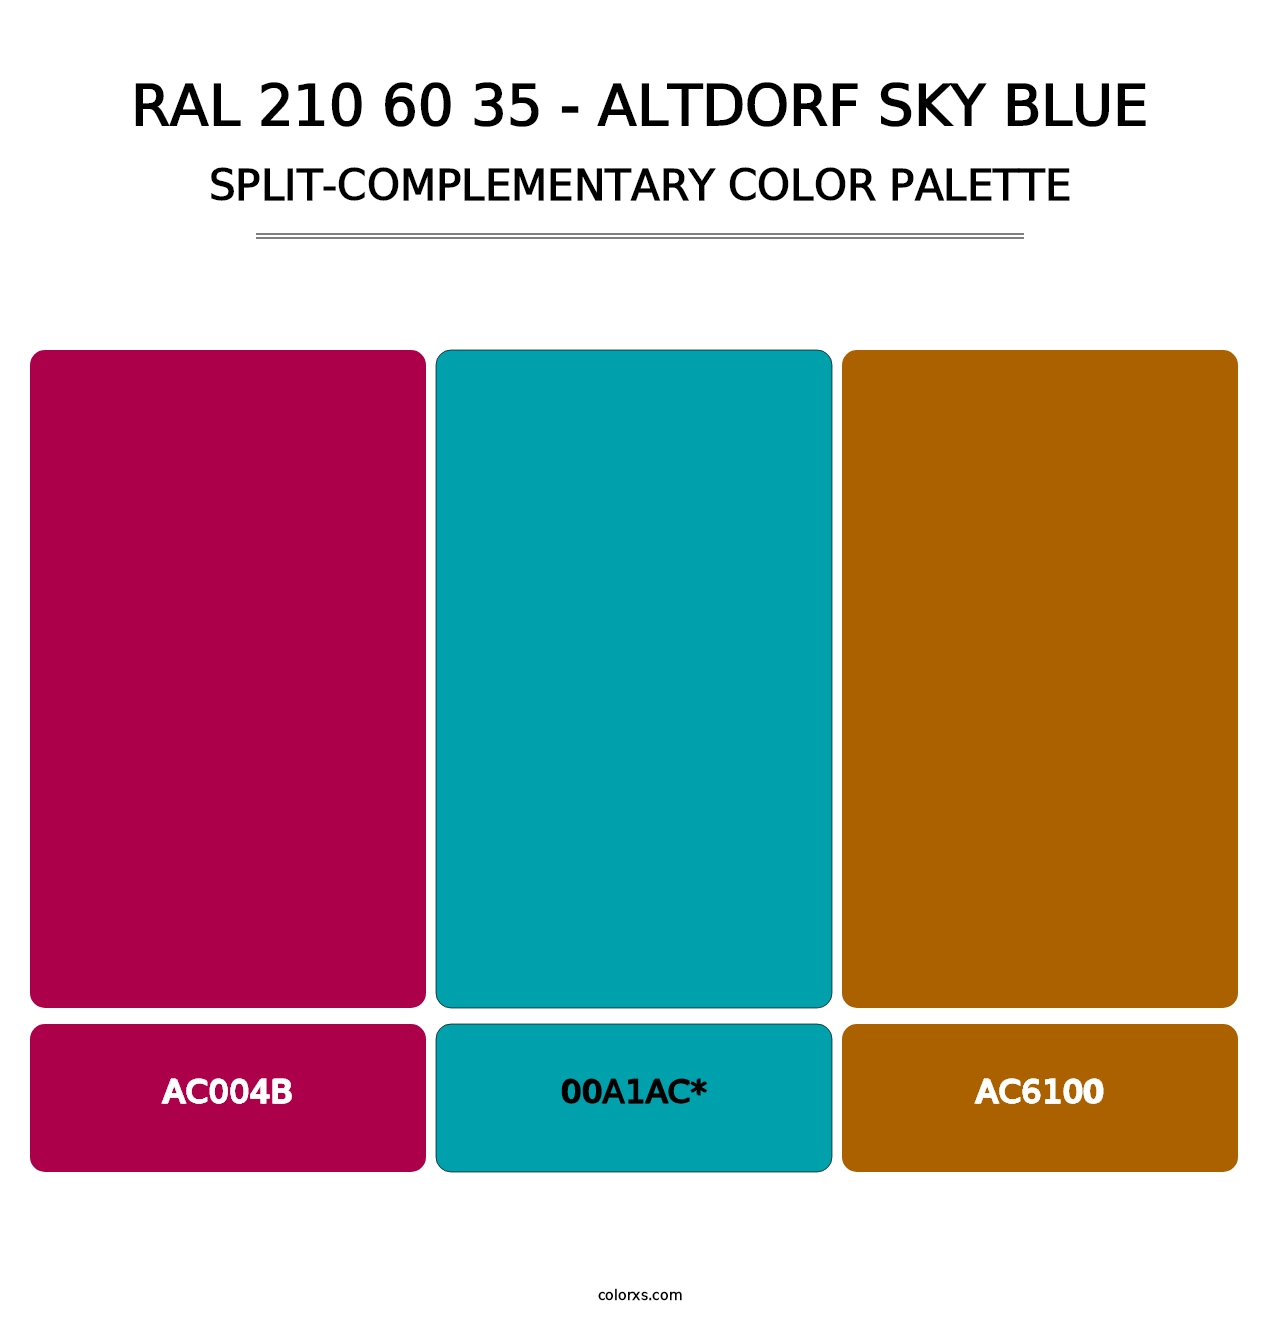 RAL 210 60 35 - Altdorf Sky Blue - Split-Complementary Color Palette